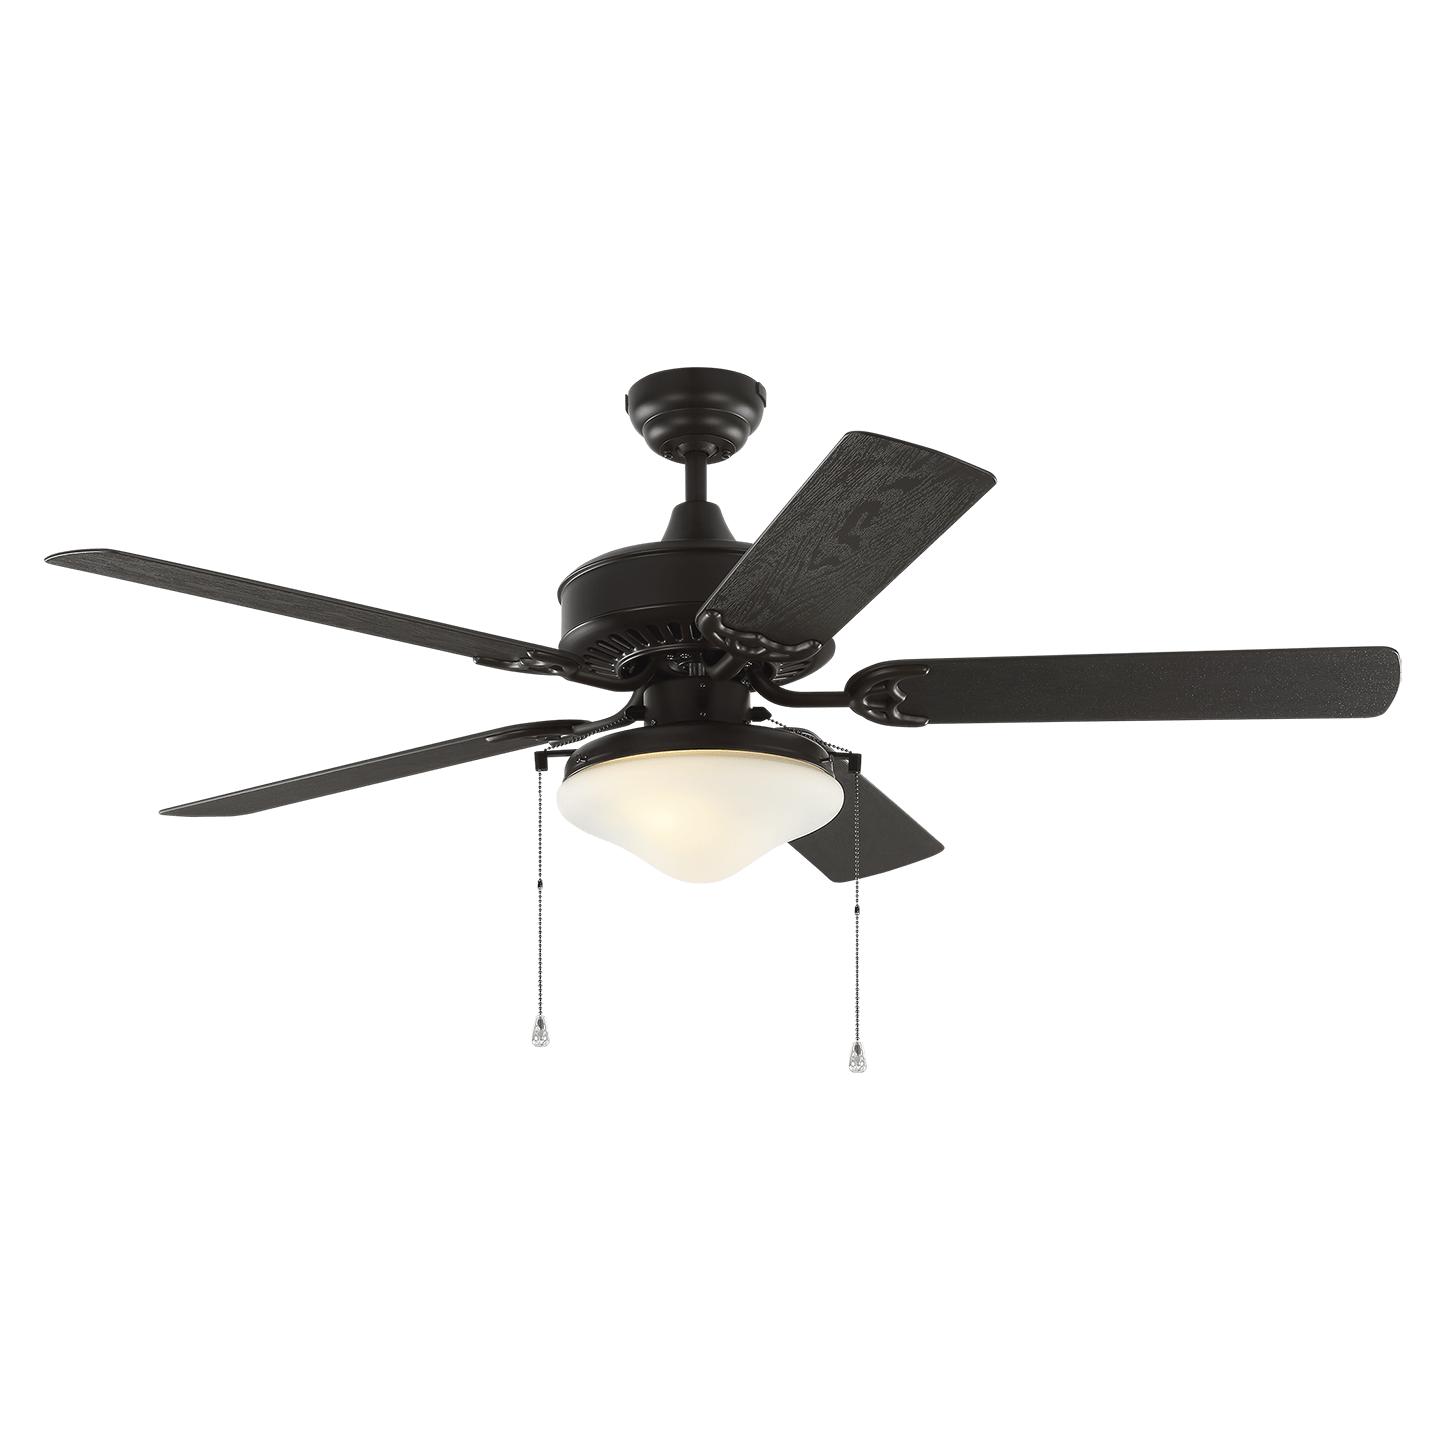 Купить Потолочный вентилятор Haven Outdoor 52" LED Ceiling Fan в интернет-магазине roooms.ru